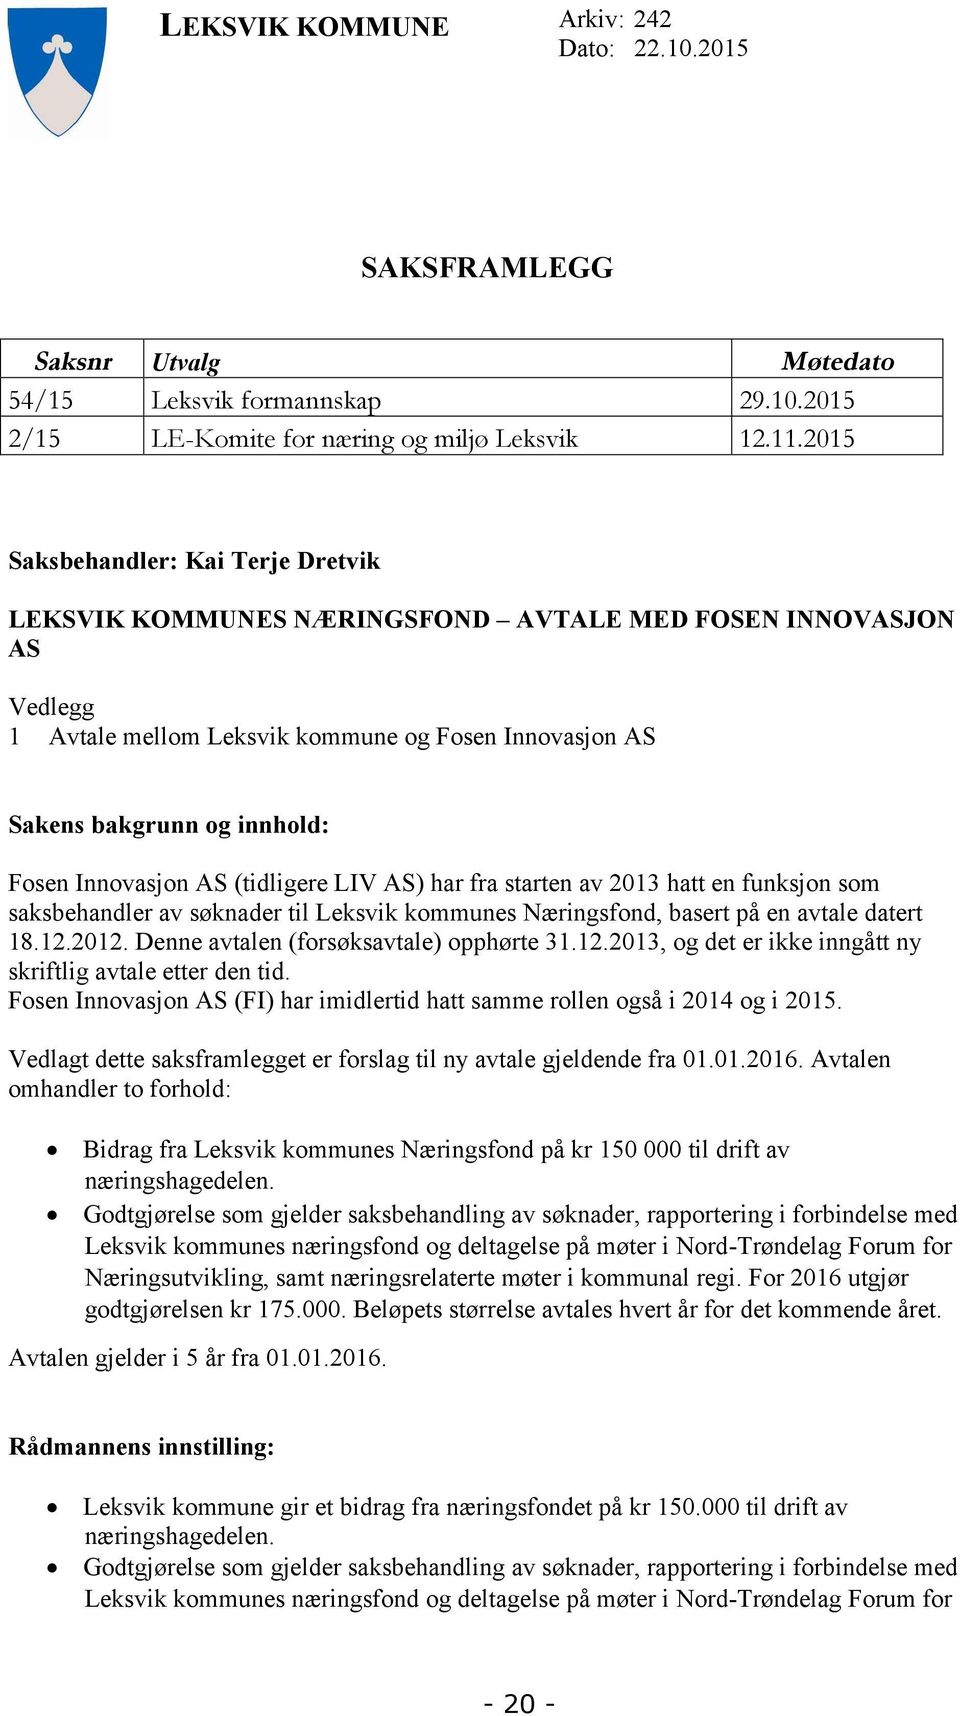 Innovasjon AS (tidligere LIV AS) har fra starten av 2013 hatt en funksjon som saksbehandler av søknader til Leksvik kommunes Næringsfond, basert på en avtale datert 18.12.2012.